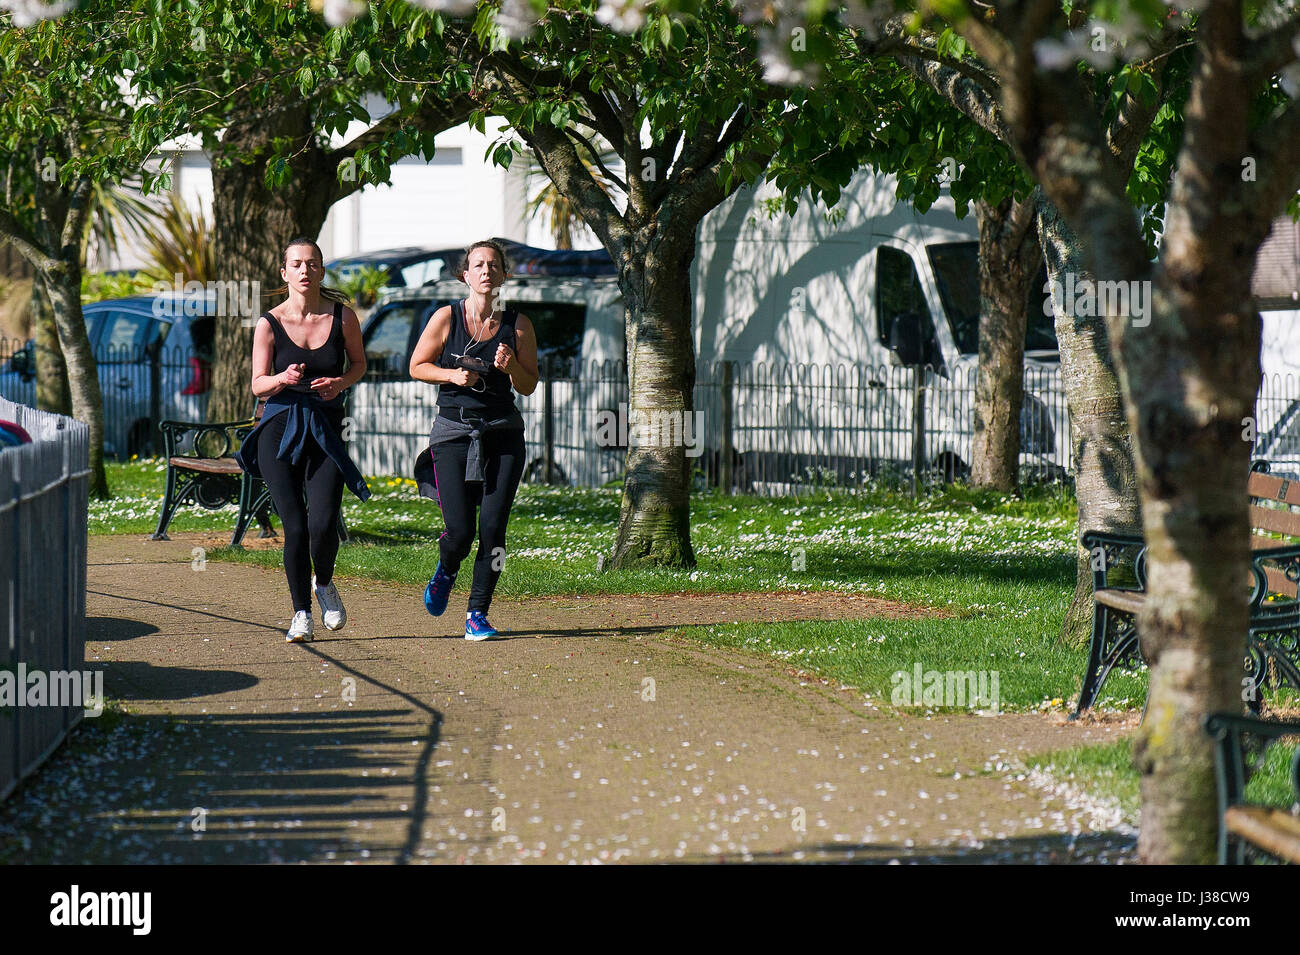 Zwei Frauen Joggen halten fit Regime Joggen Jogger laufen bestimmt Ausübung gesunden Lebensstil Fitness Läufer Lifestyle Übung Sunny Stockfoto